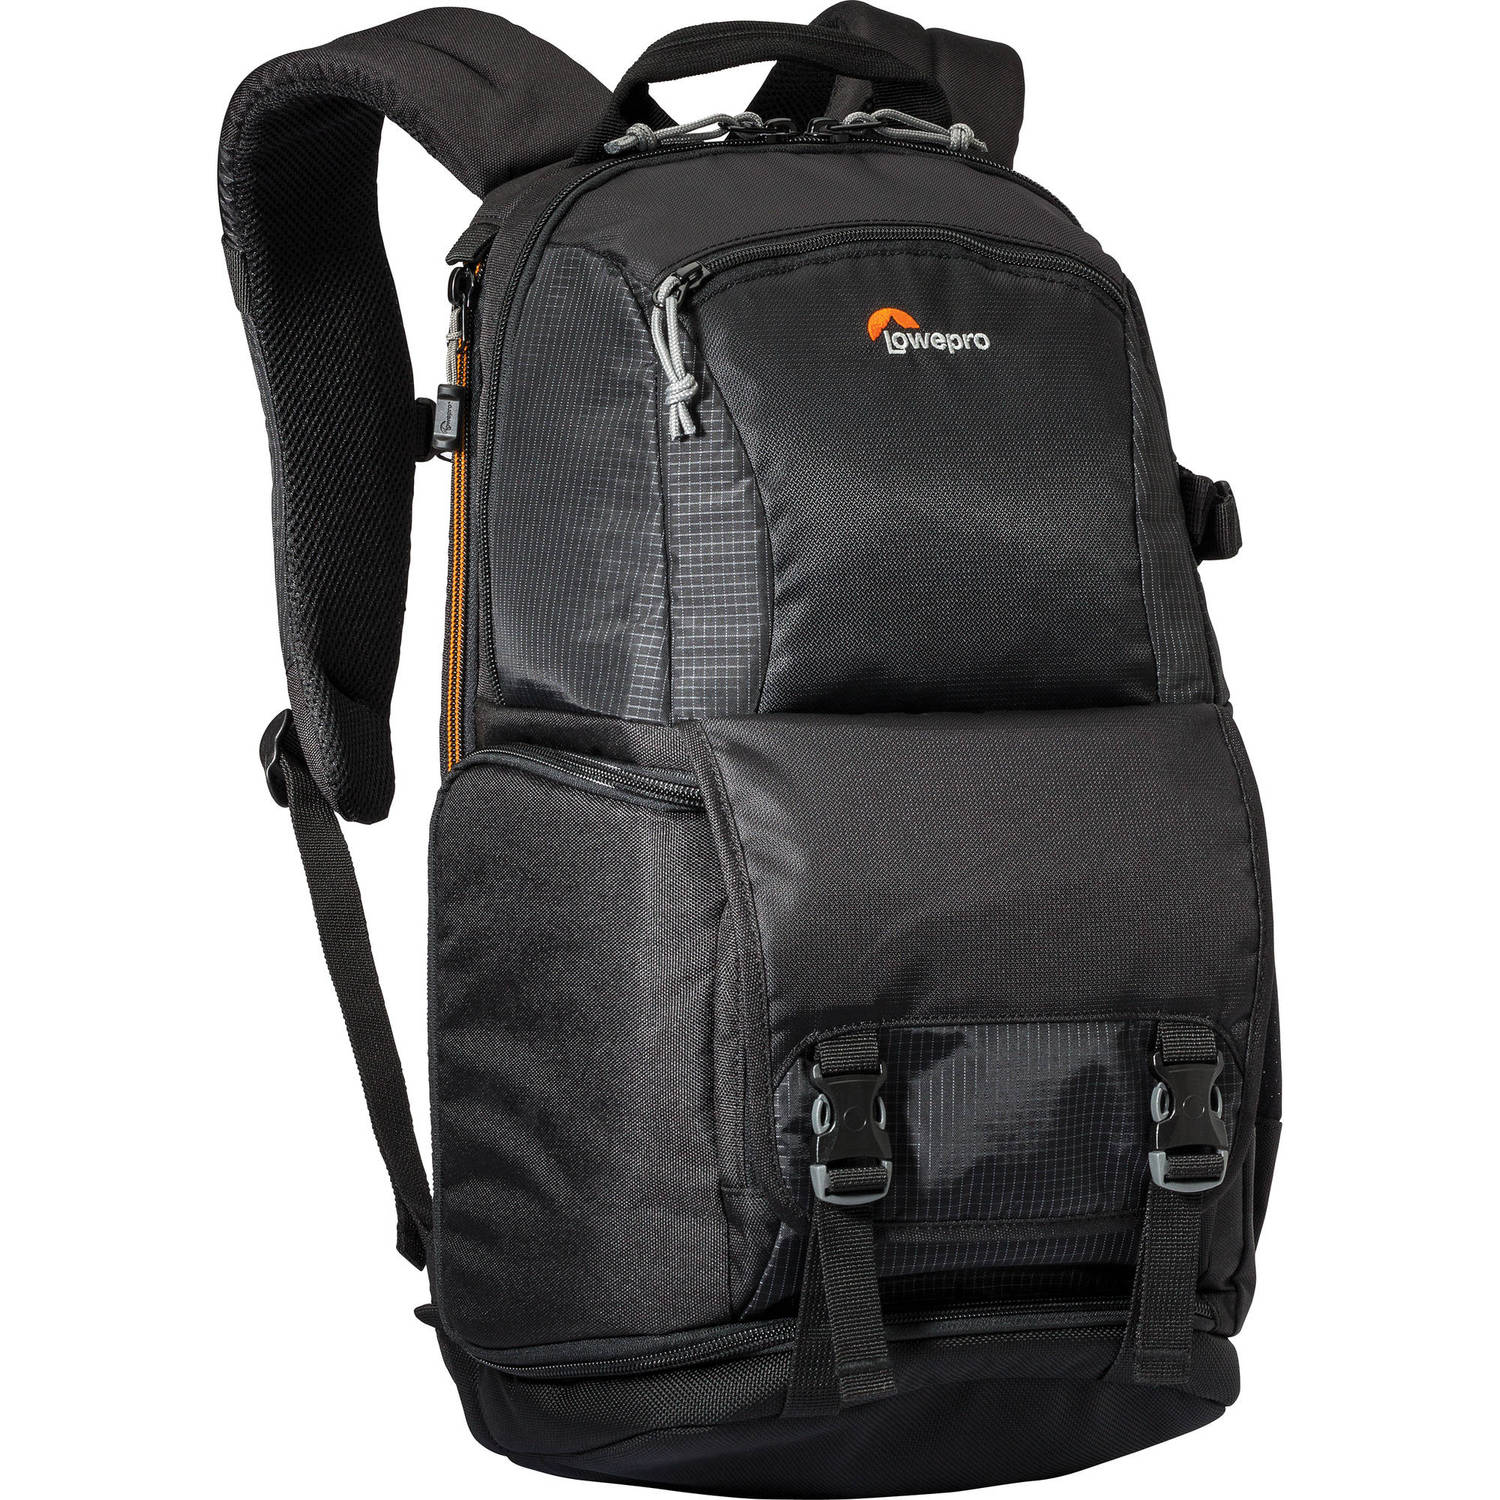 Lowepro Fastpack BP 150 AW II Backpack  (Black)